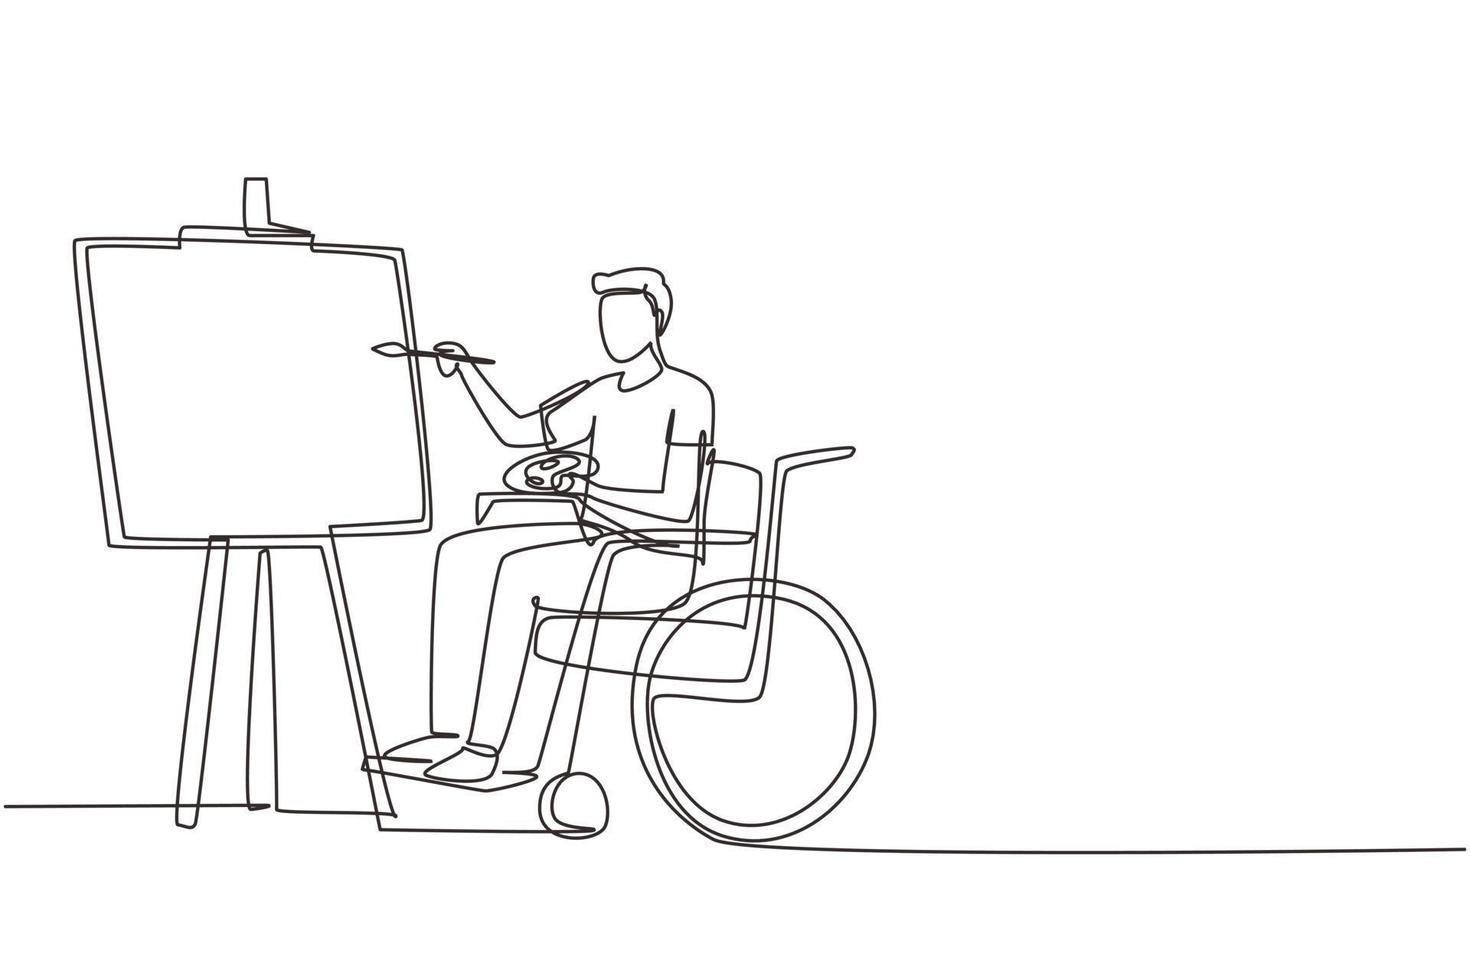 enda kontinuerlig linjeteckning handikappad man i rullstol måla landskap på duk. rehabilitering fysioterapi koncept. fysisk funktionsnedsättning och samhälle. en rad rita design vektorillustration vektor